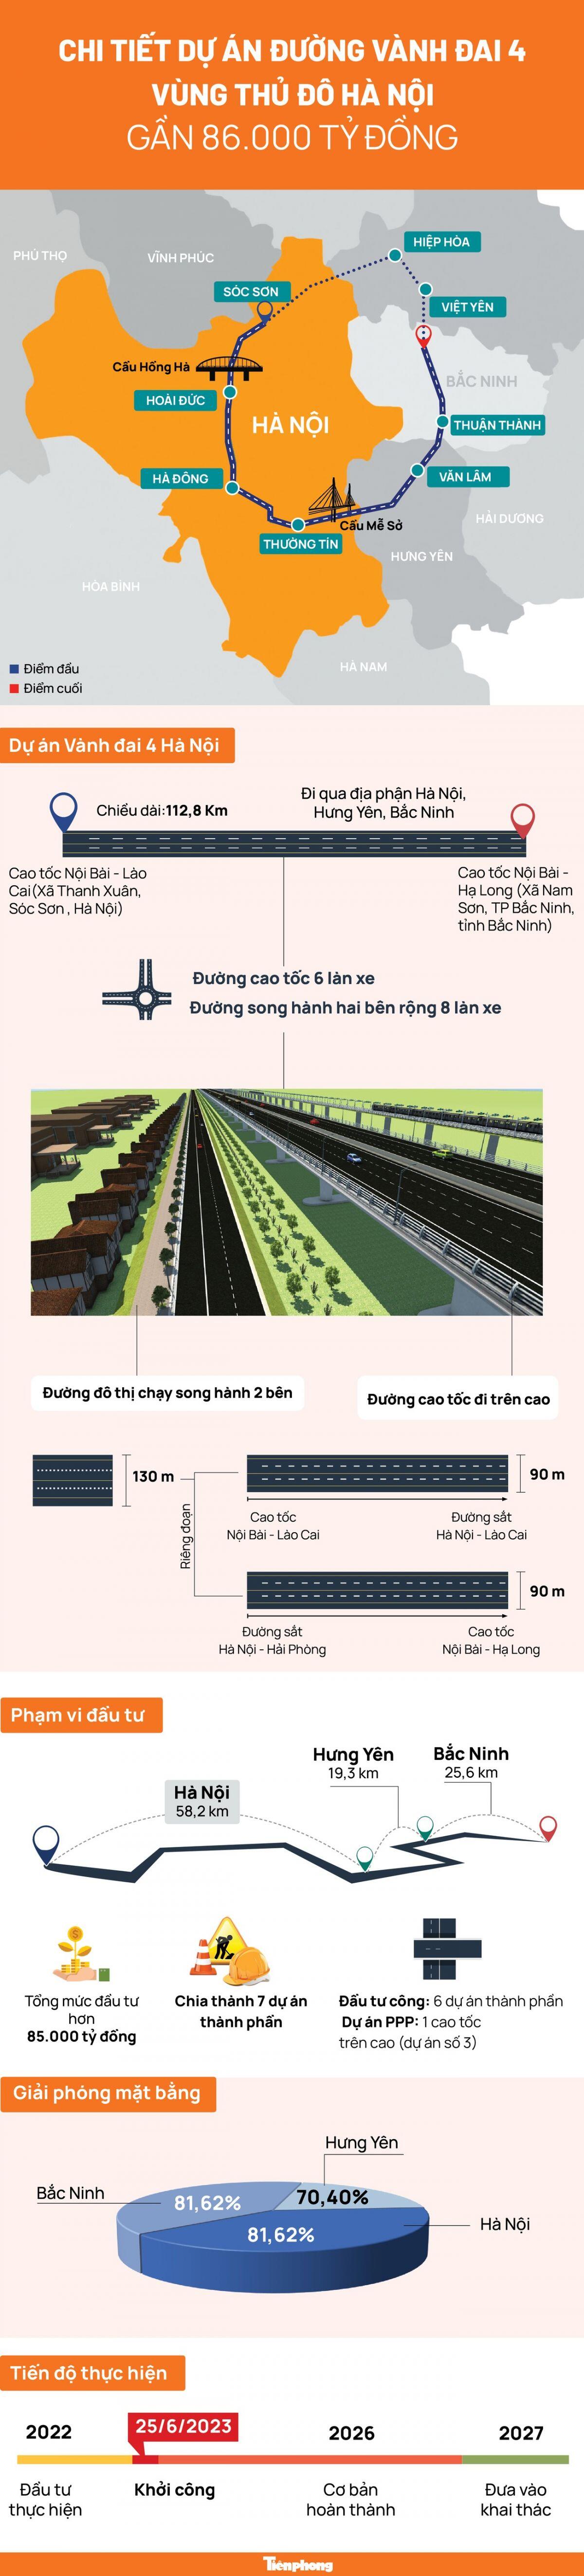 Chi tiết Dự án đường vành đai 4 vùng Thủ đô Hà Nội gần 86.000 tỷ đồng ảnh 1